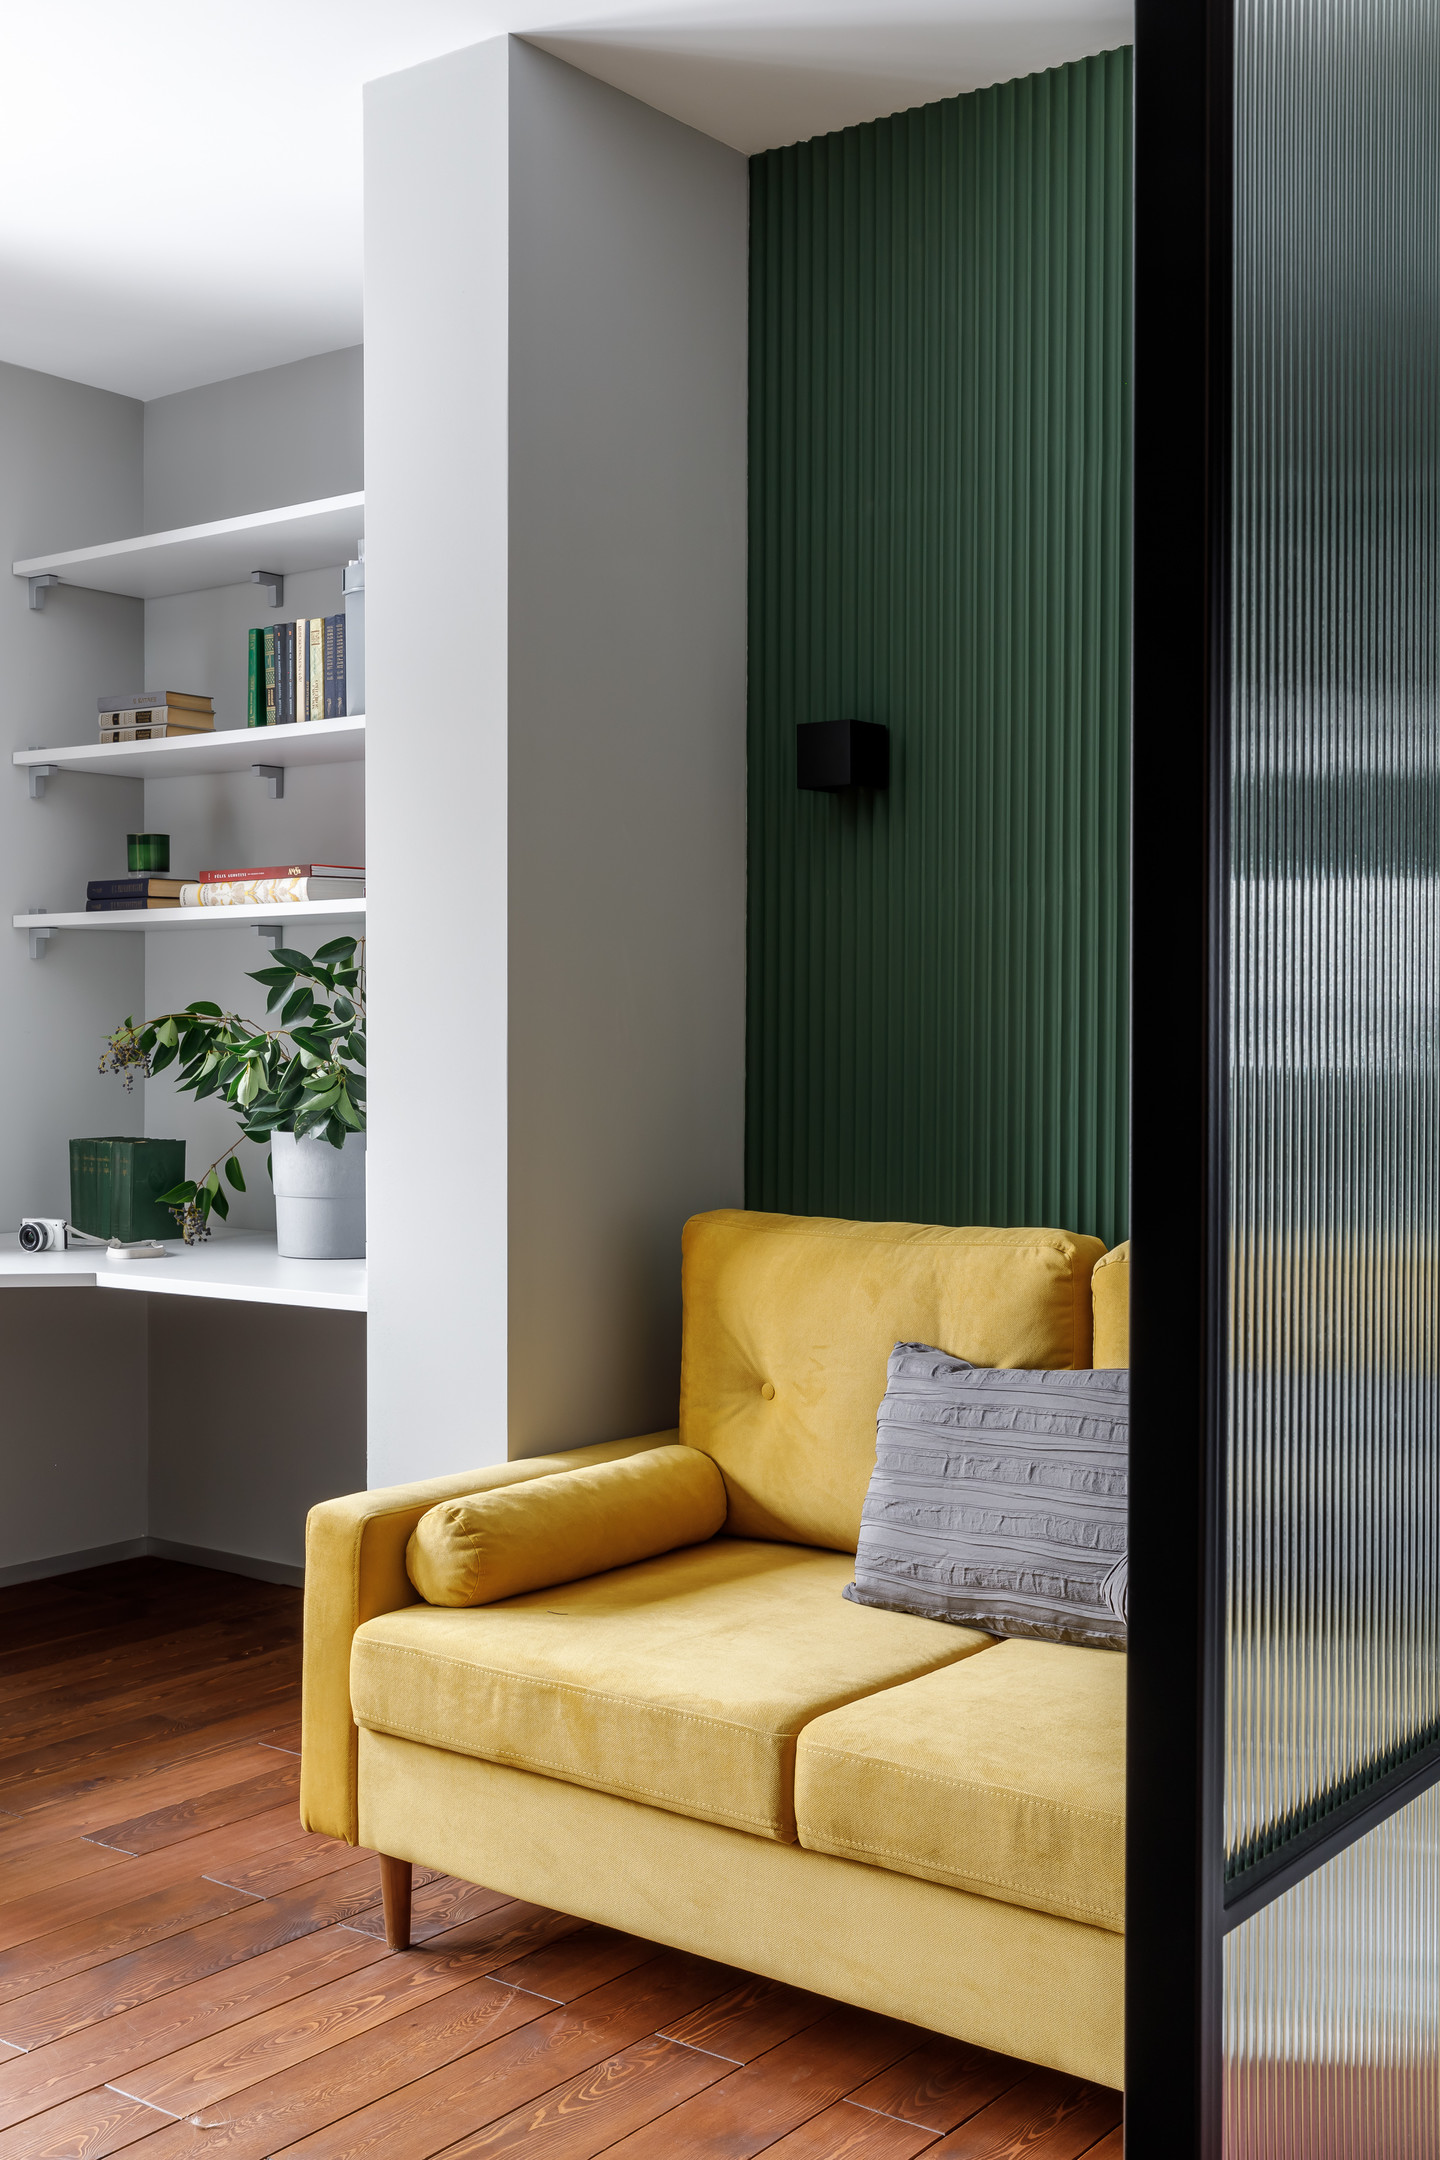 Phòng khách tuy nhỏ, chỉ chiếm một góc phòng nhưng vẫn nổi bật nhờ sự kết hợp của tường màu xanh lá với những đường kẻ sọc sinh động, thêm một chiếc ghế sofa màu vàng êm ái, loại bỏ bàn nước cho không gian thoáng đãng.